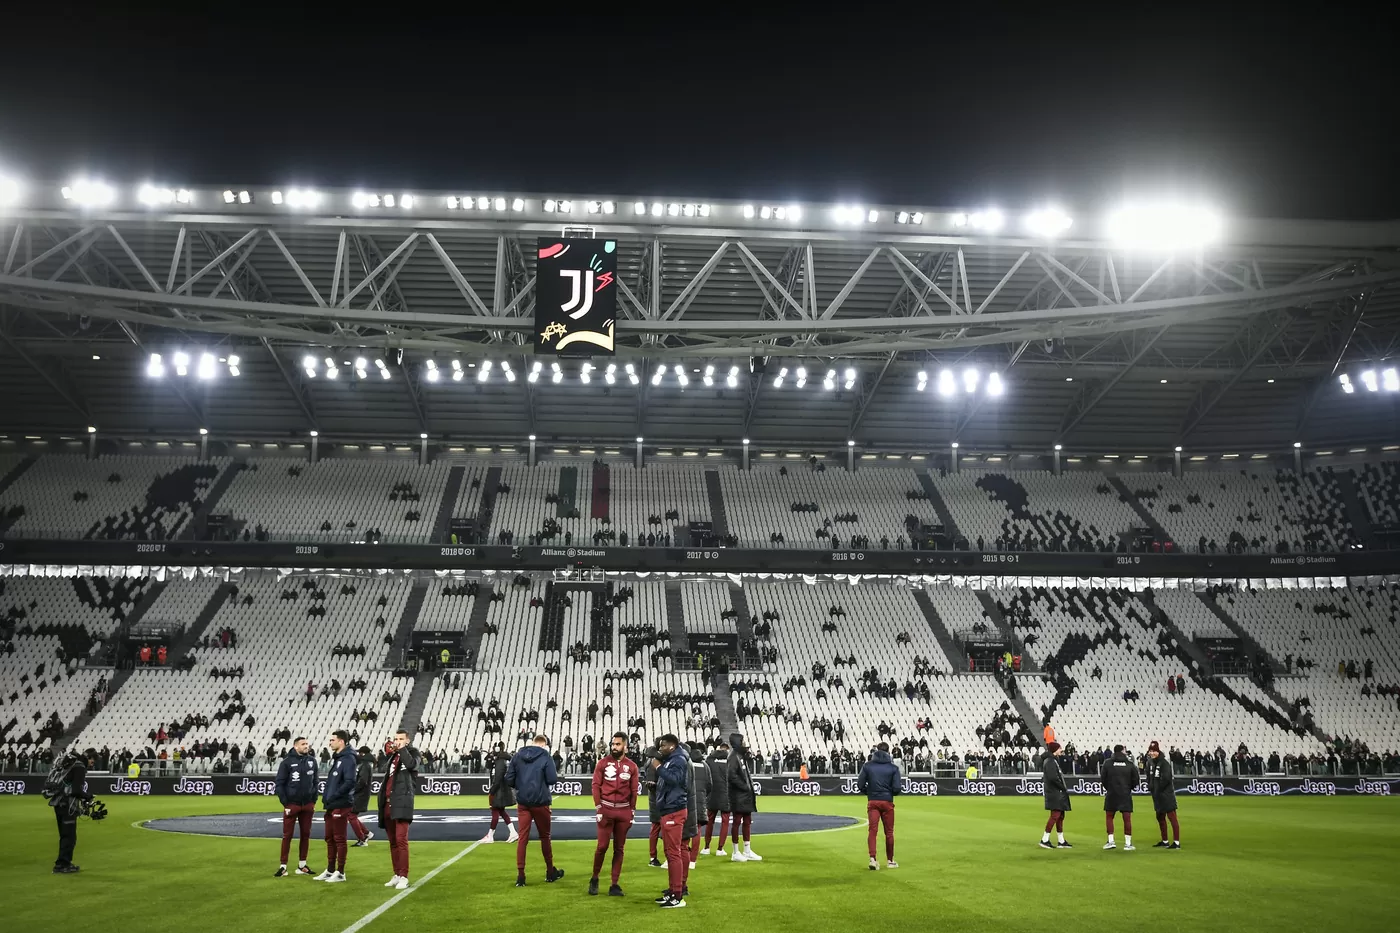 Le formazioni ufficiali di Juventus e Torino in campo per il riscaldamento